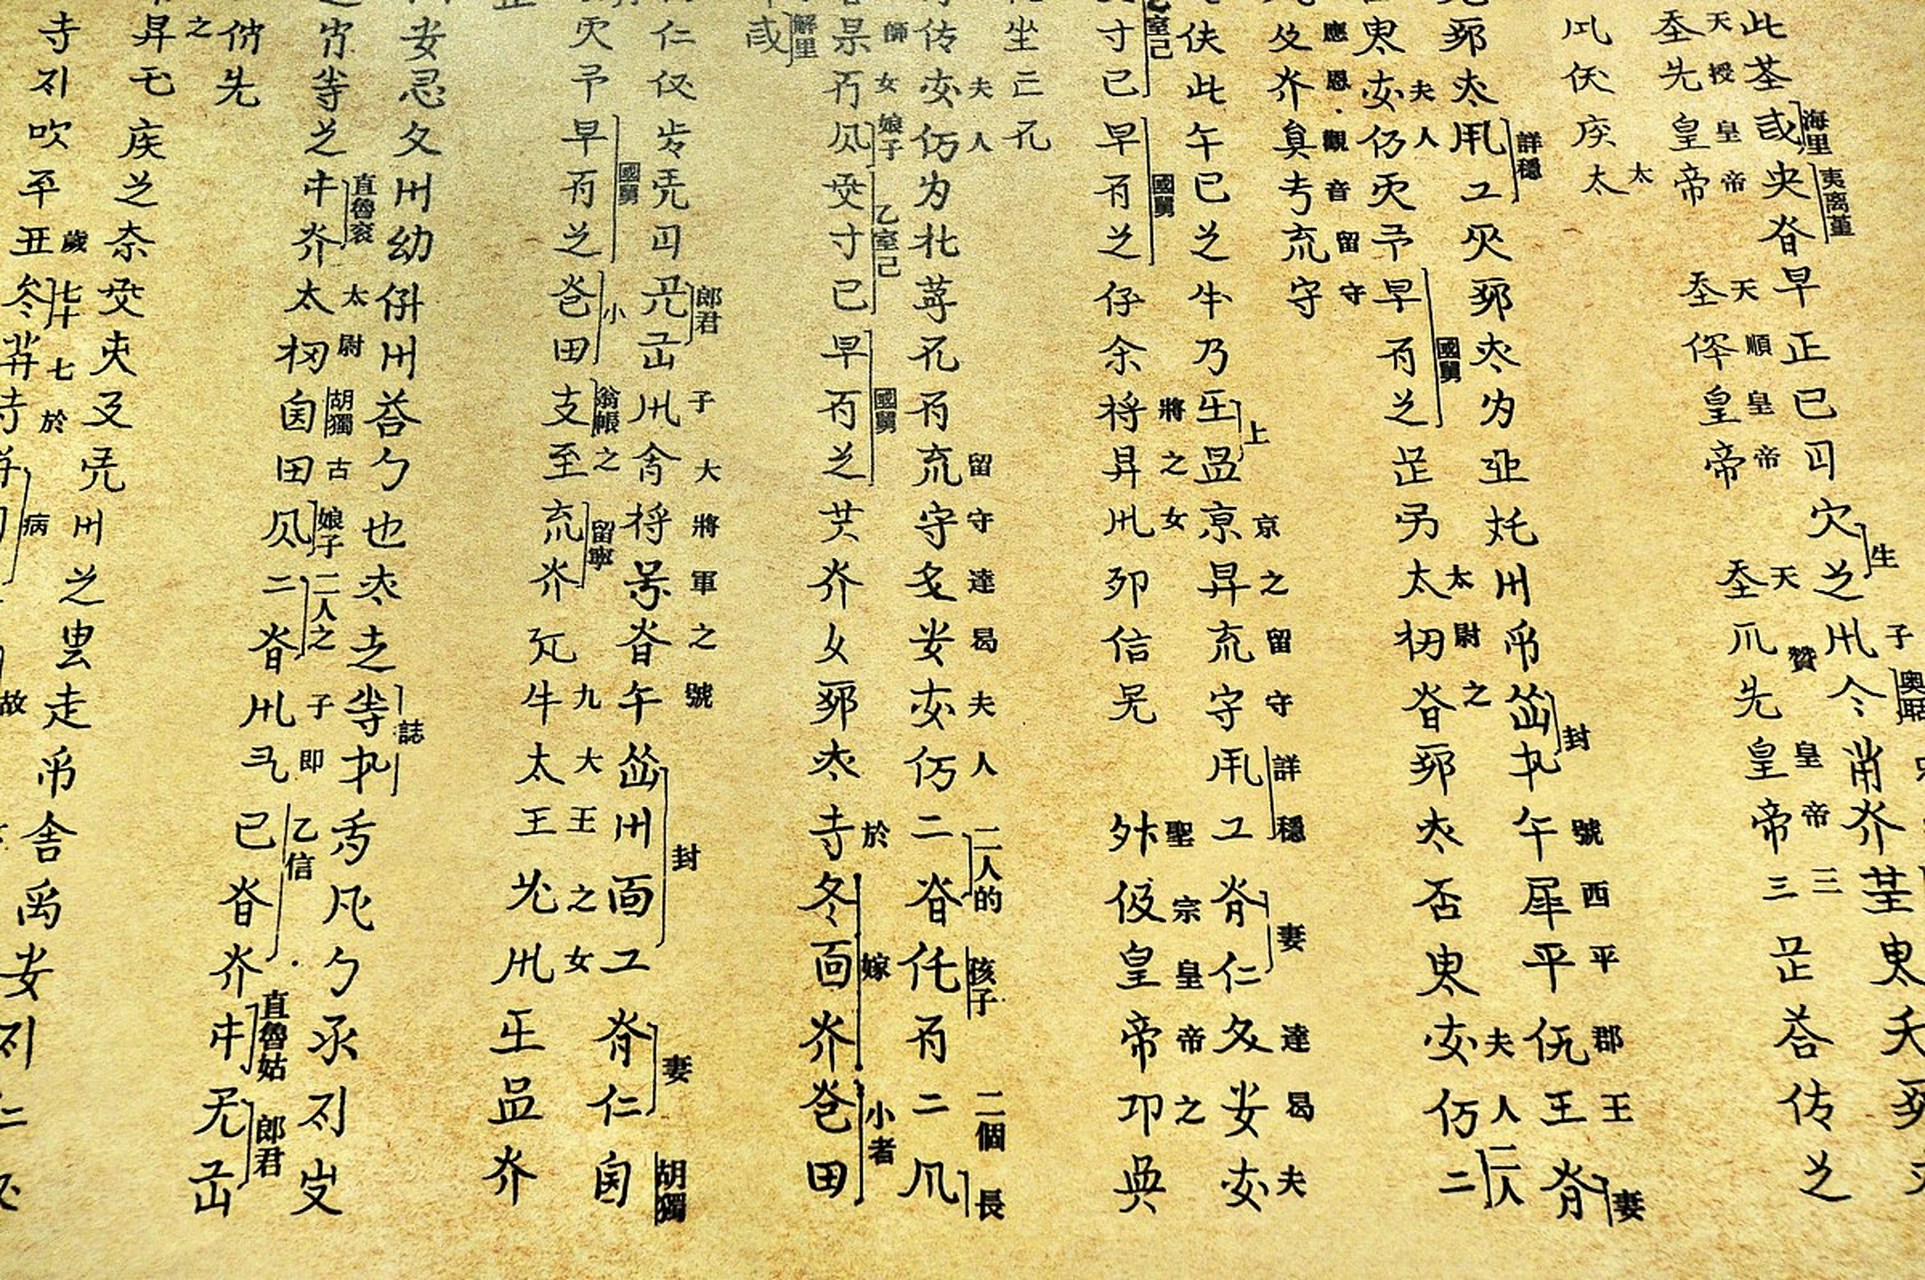 契丹文字是谁建立的 契丹建国之初,太祖神策五年(920),由突吕不,鲁